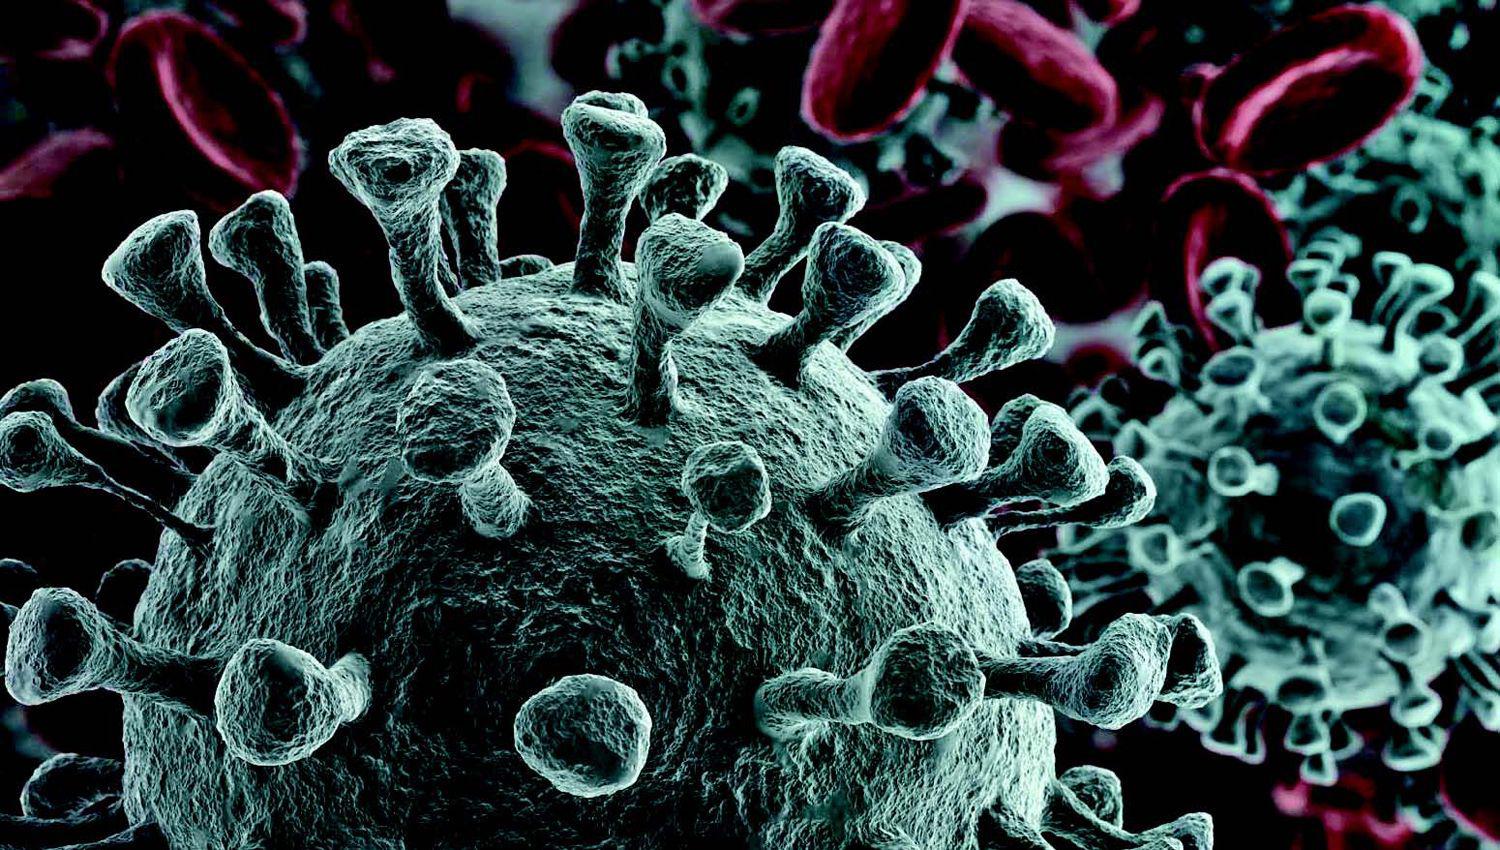 Hallan mutaciones del coronavirus que podriacutean hacerlo todaviacutea maacutes peligroso